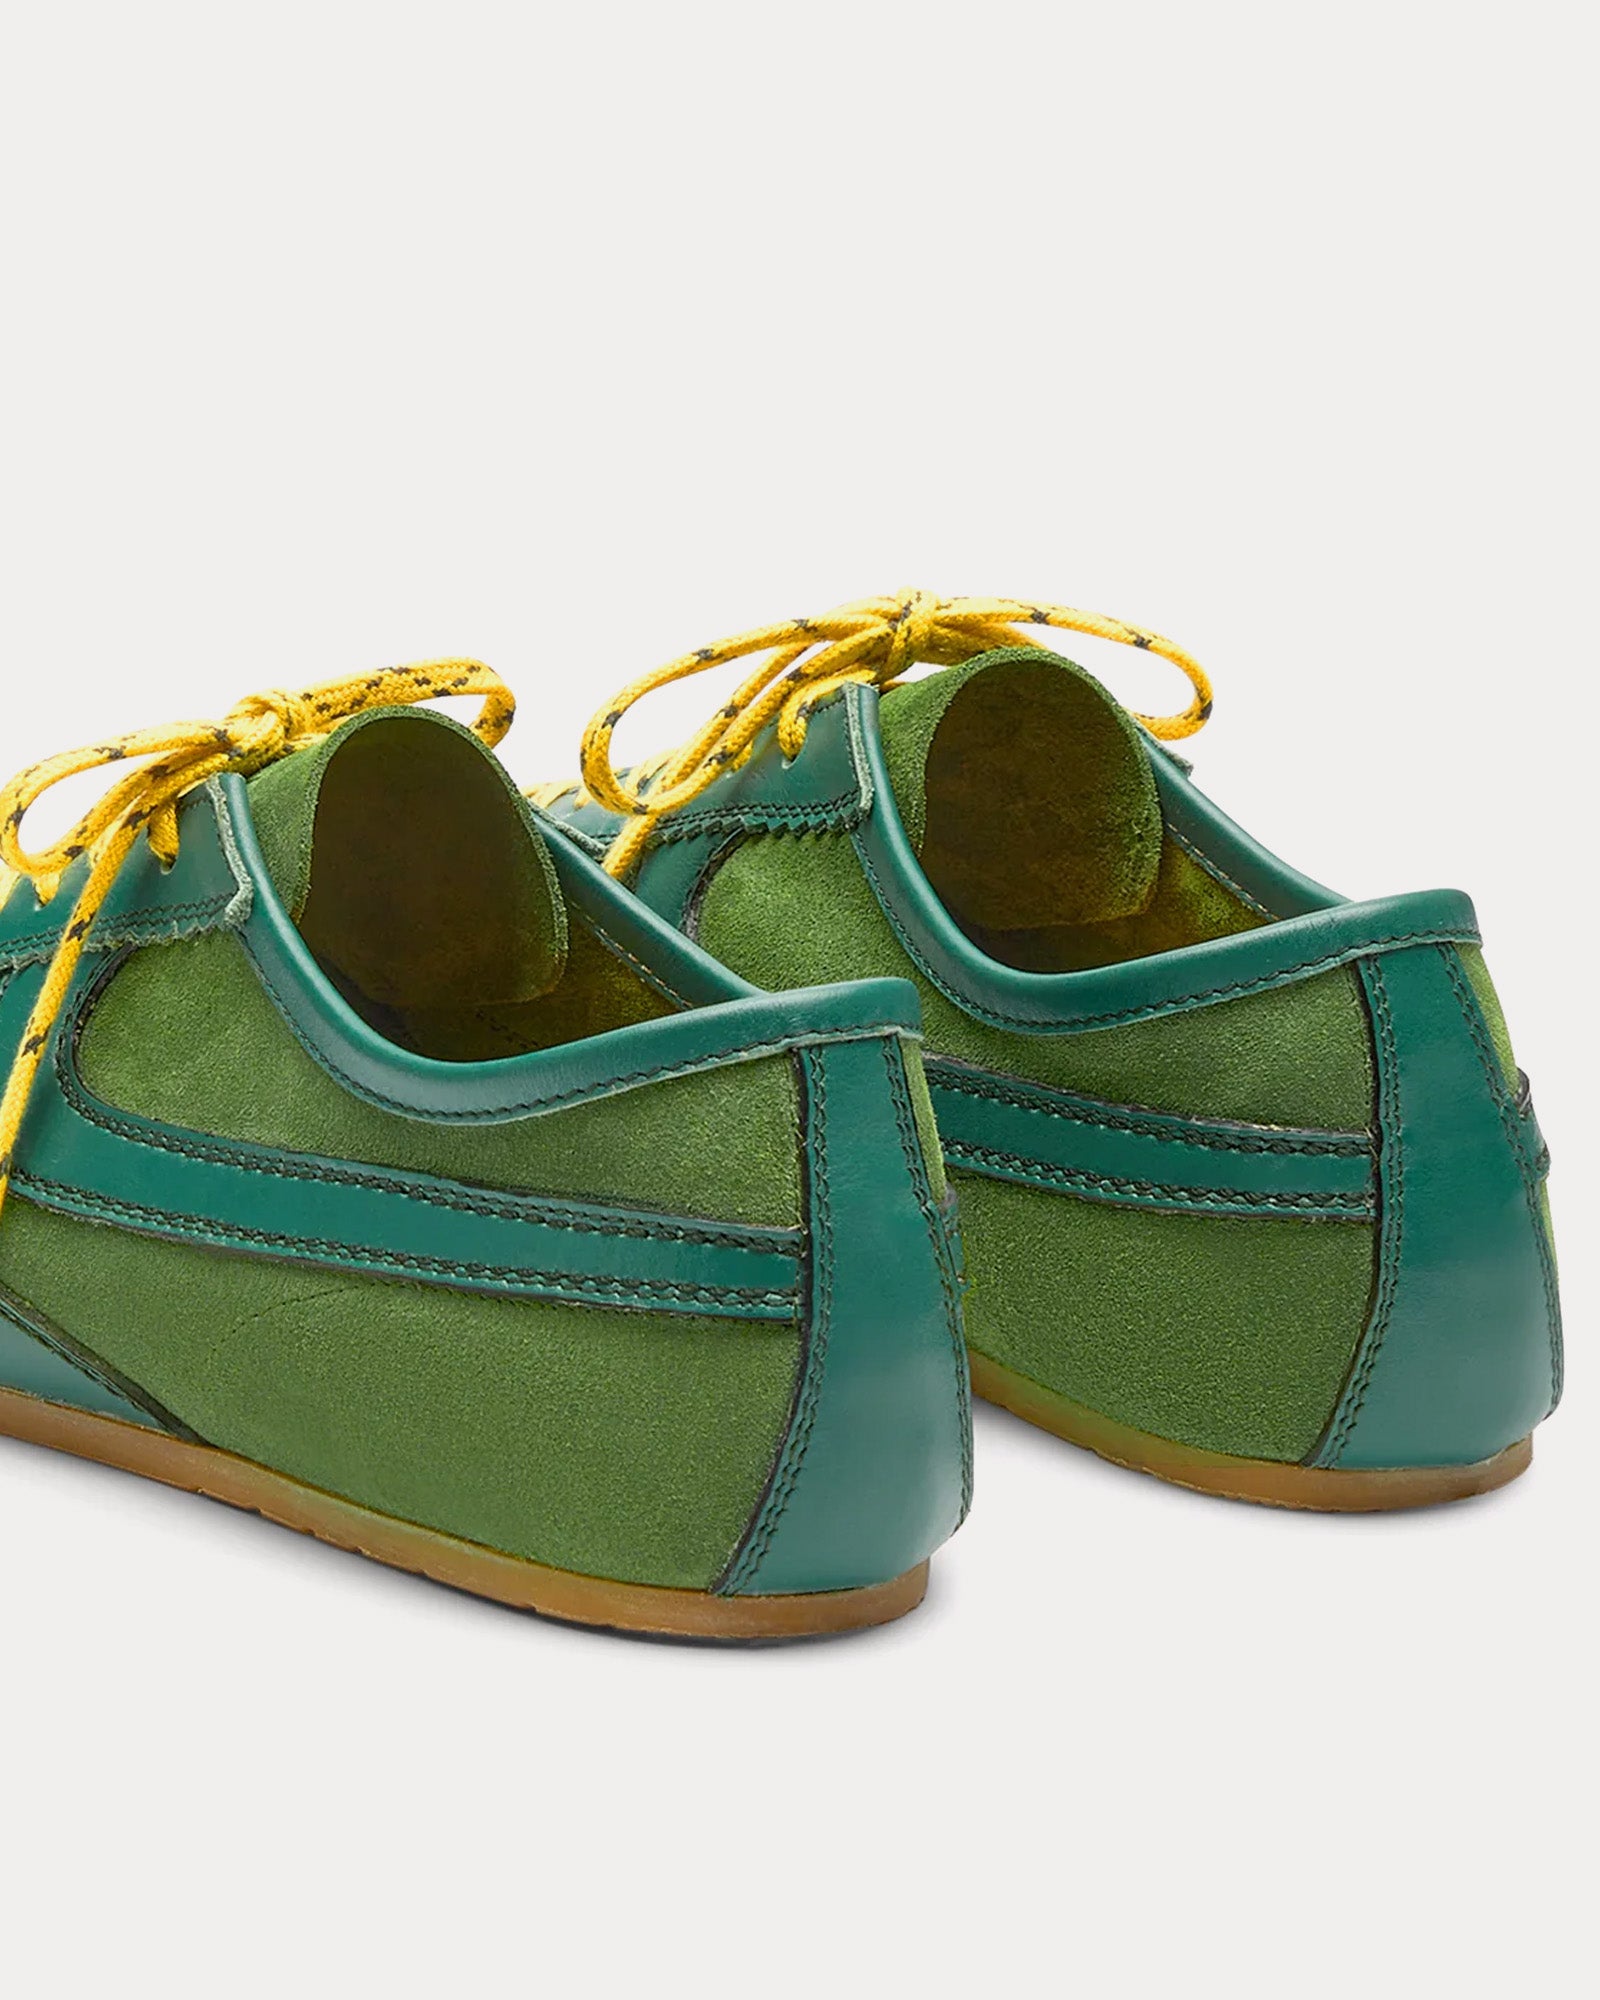 Dries Van Noten - 70's Suede Green Low Top Sneakers